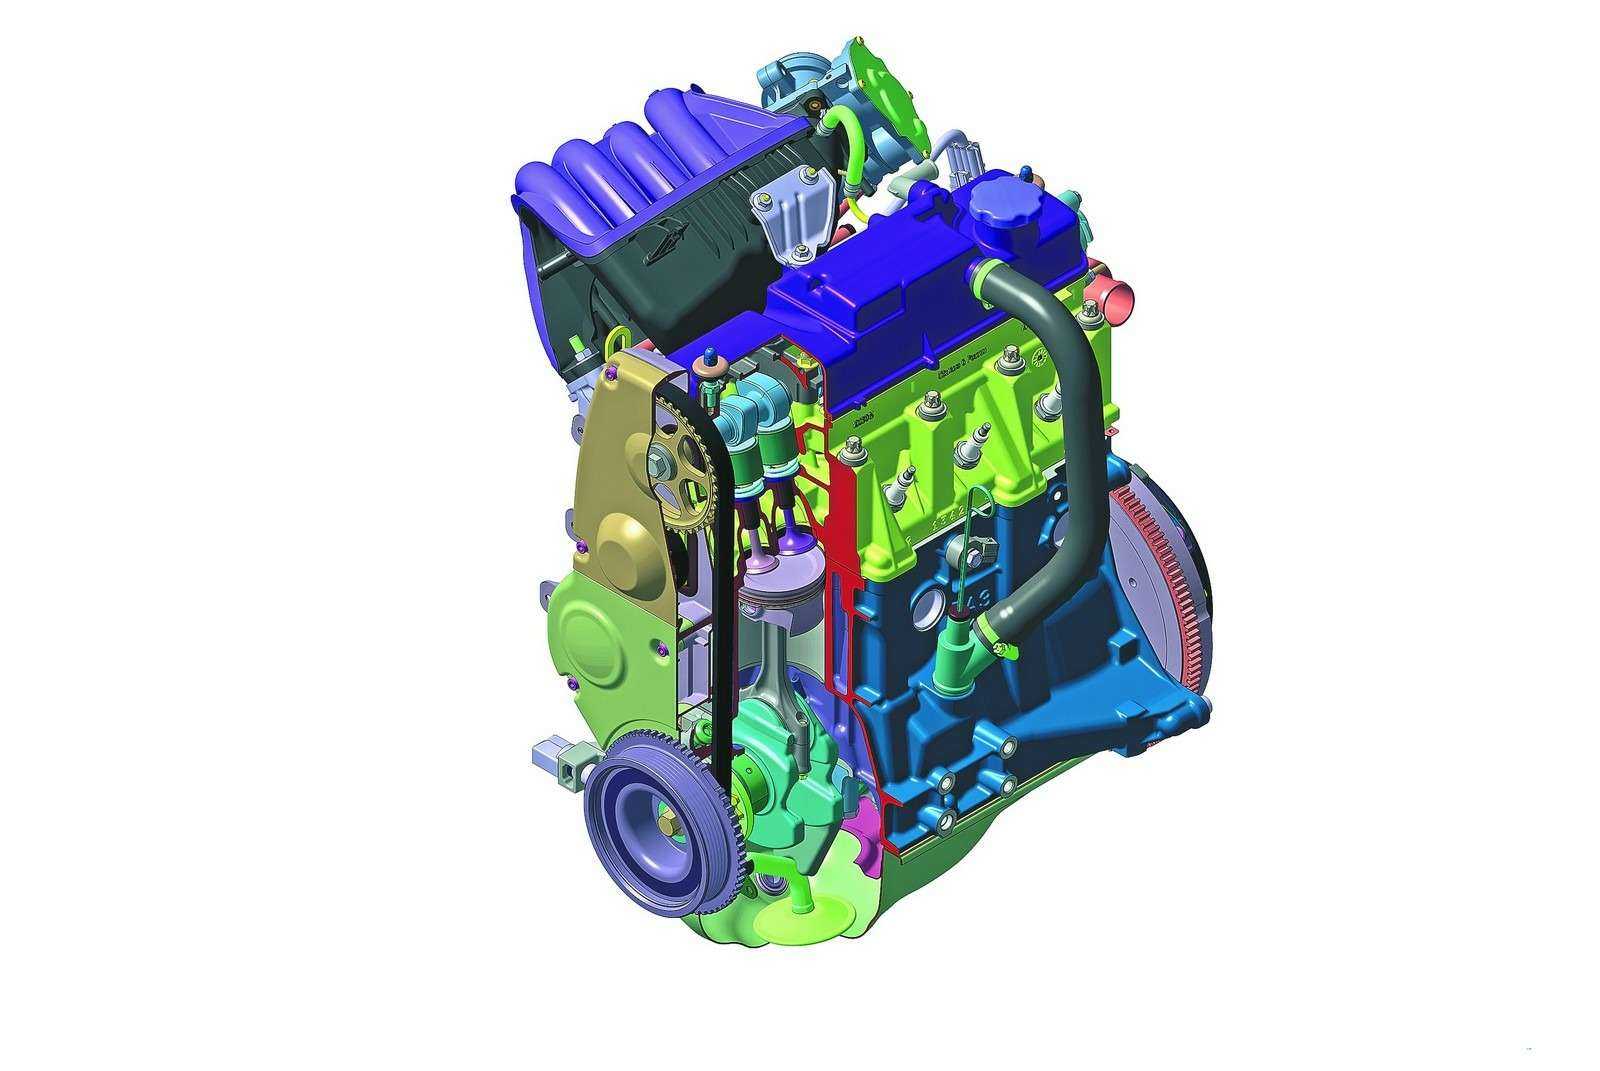 Двигатель ваз 21114, технические характеристики, какое масло лить, ремонт двигателя 21114, доработки и тюнинг, схема устройства, рекомендации по обслуживанию